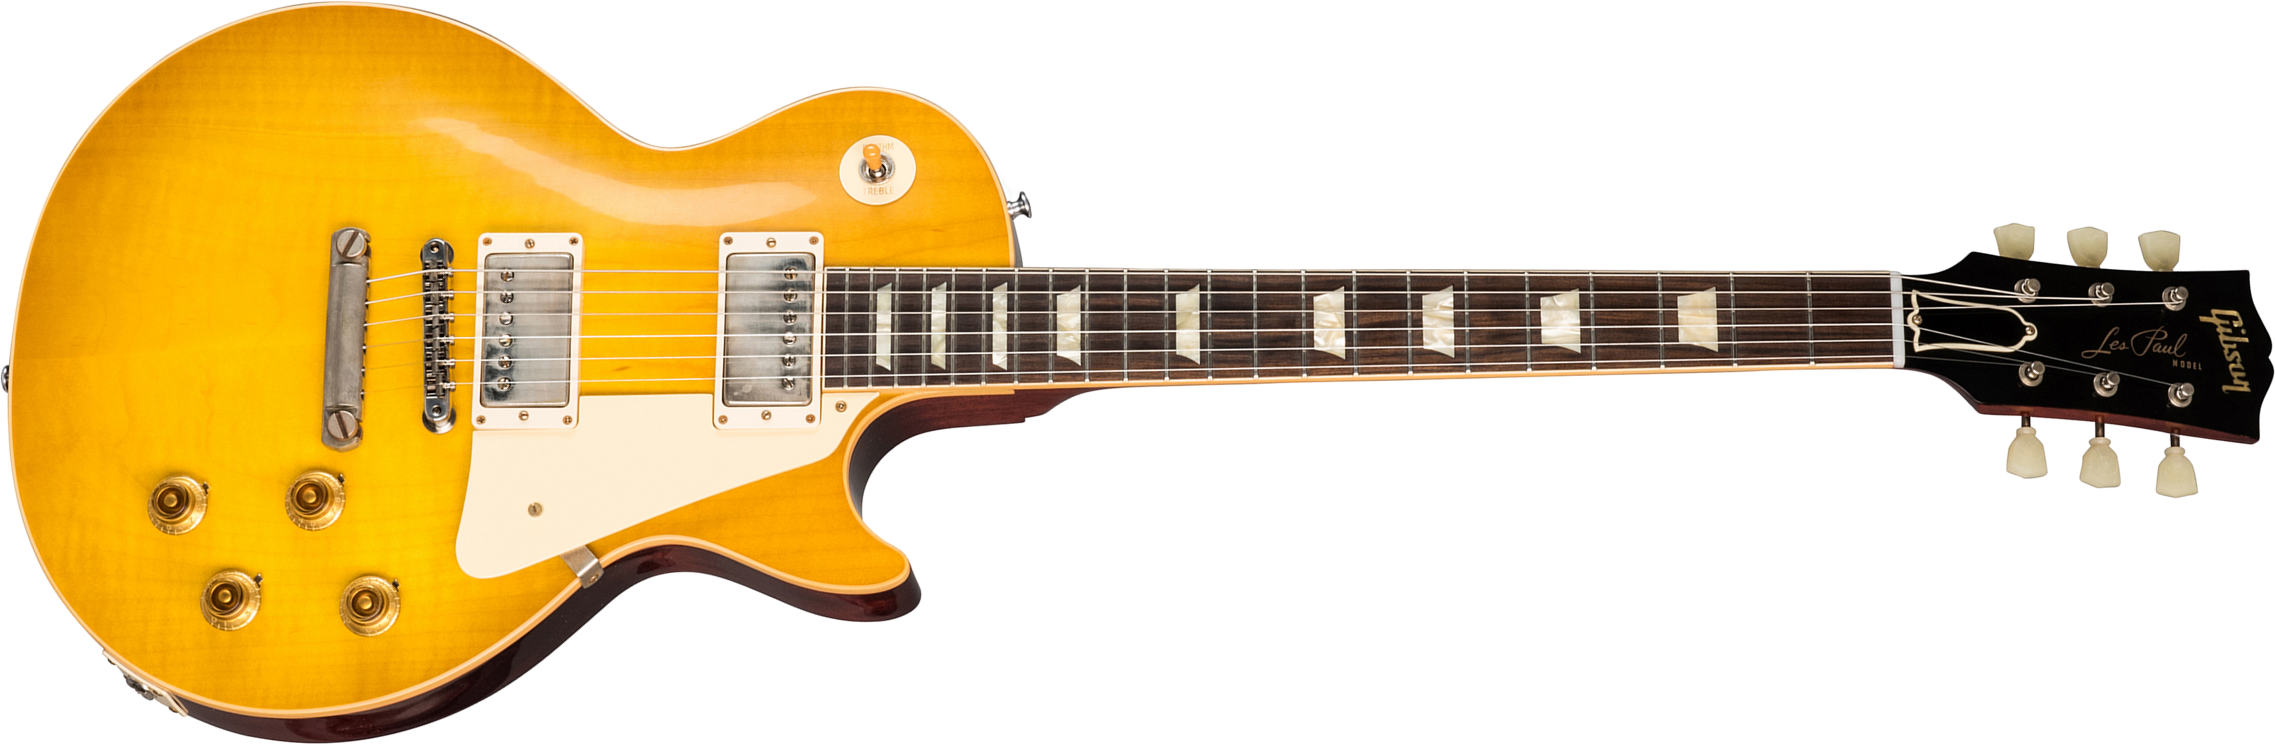 Gibson Custom Shop Les Paul Standard 1958 Reissue 2019 2h Ht Rw - Vos Lemon Burst - Single cut electric guitar - Main picture